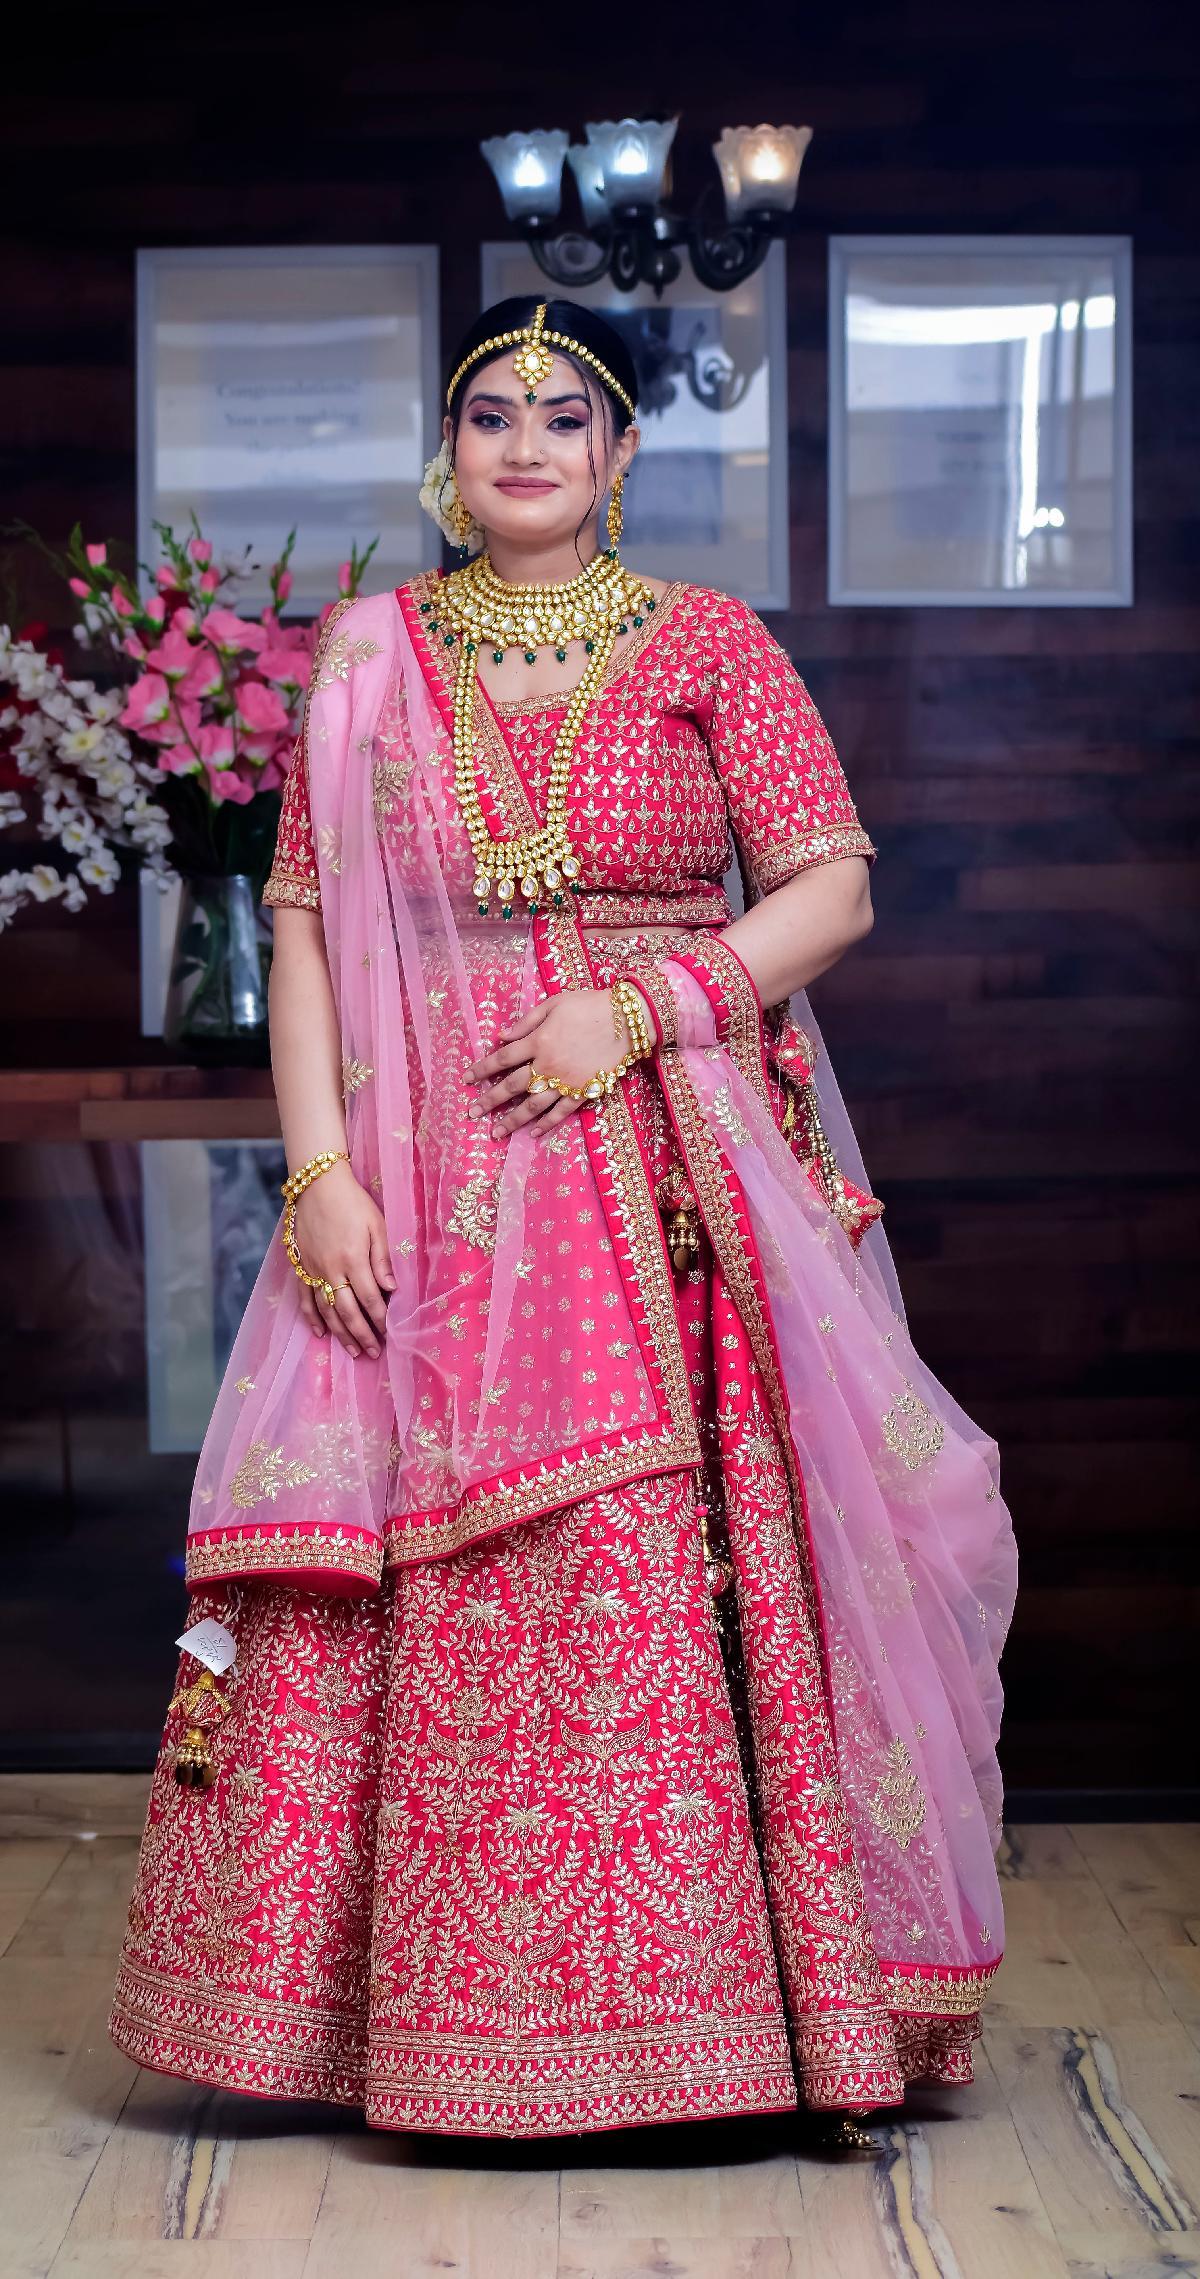 Bride Wore Modern 'Phulkari' Red Lehenga Designed By Manish Malhotra For  Her Wedding Day